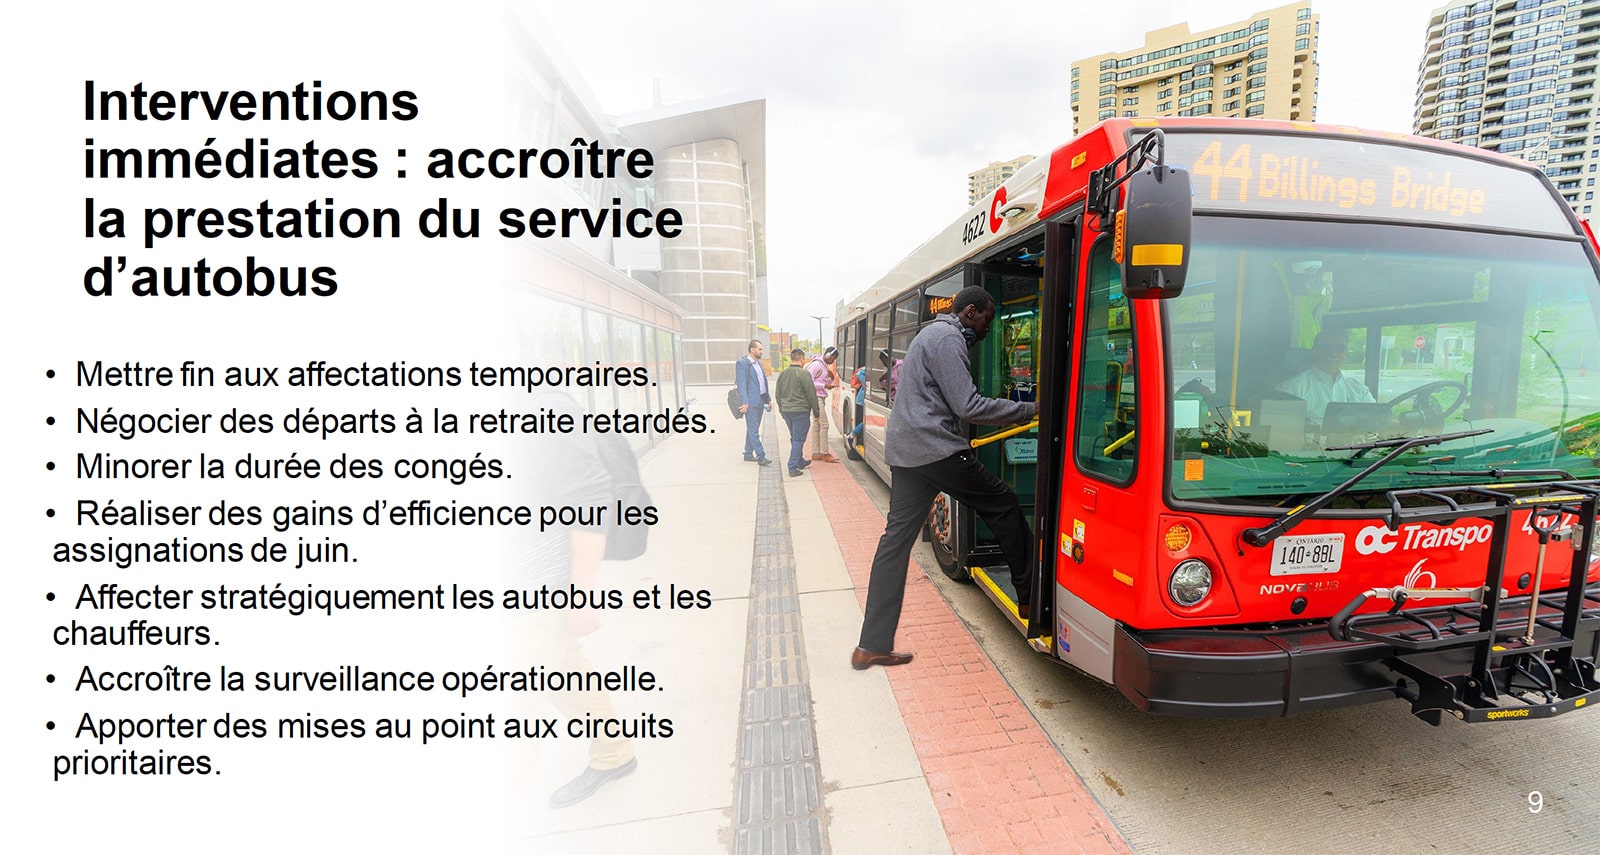 Interventions immédiates : accroître la prestation du service d’autobus